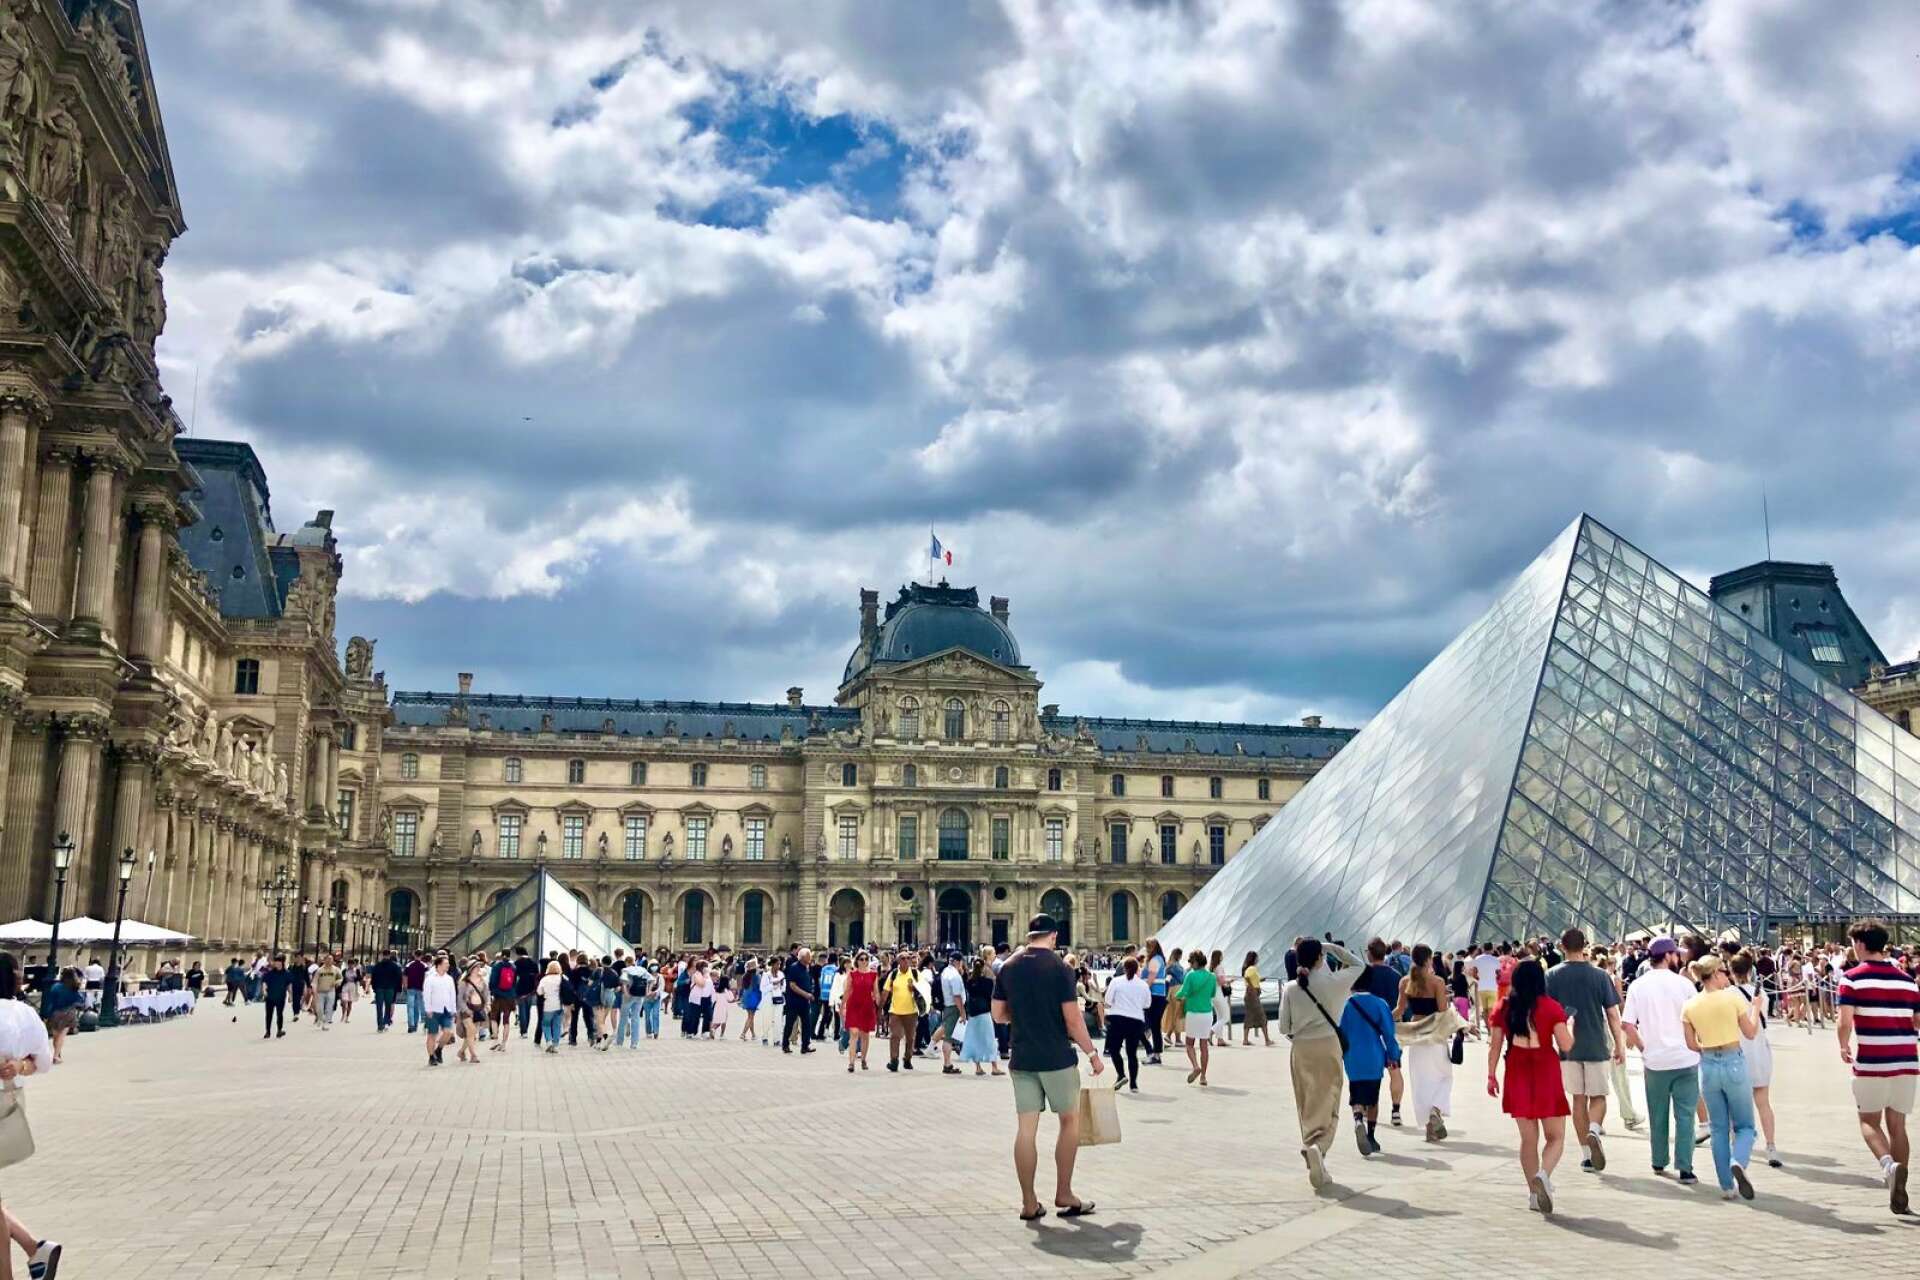 Louvrenmuseet i Paris, Frankrike. Boka biljetter i förväg så slipper du den långa kön. Betrakta annars museets praktfulla utsida, ta bilder vid Louvrepyramiden och njut av livemusik som ofta spelas. 